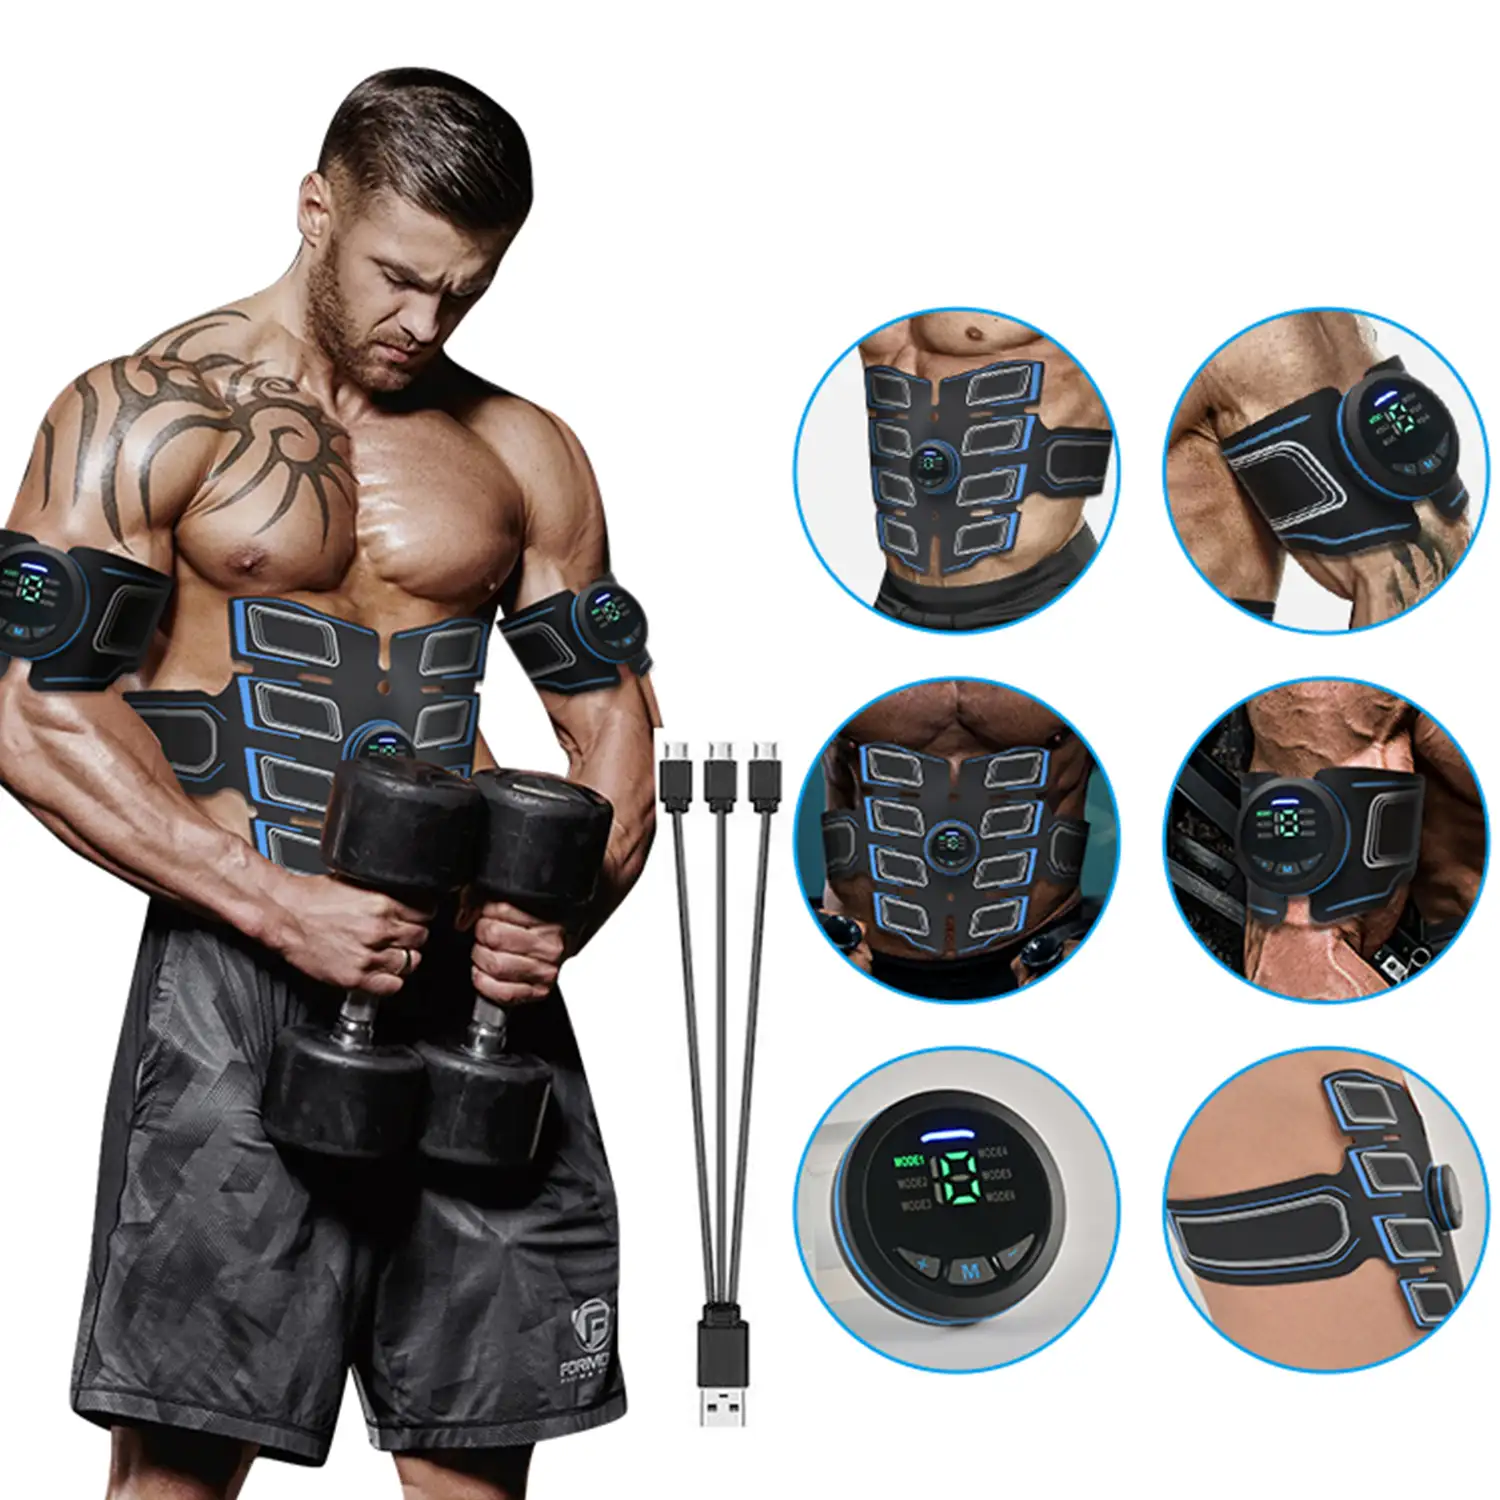 Electroestimulador muscular abdomen y brazos ABS masajeador slim